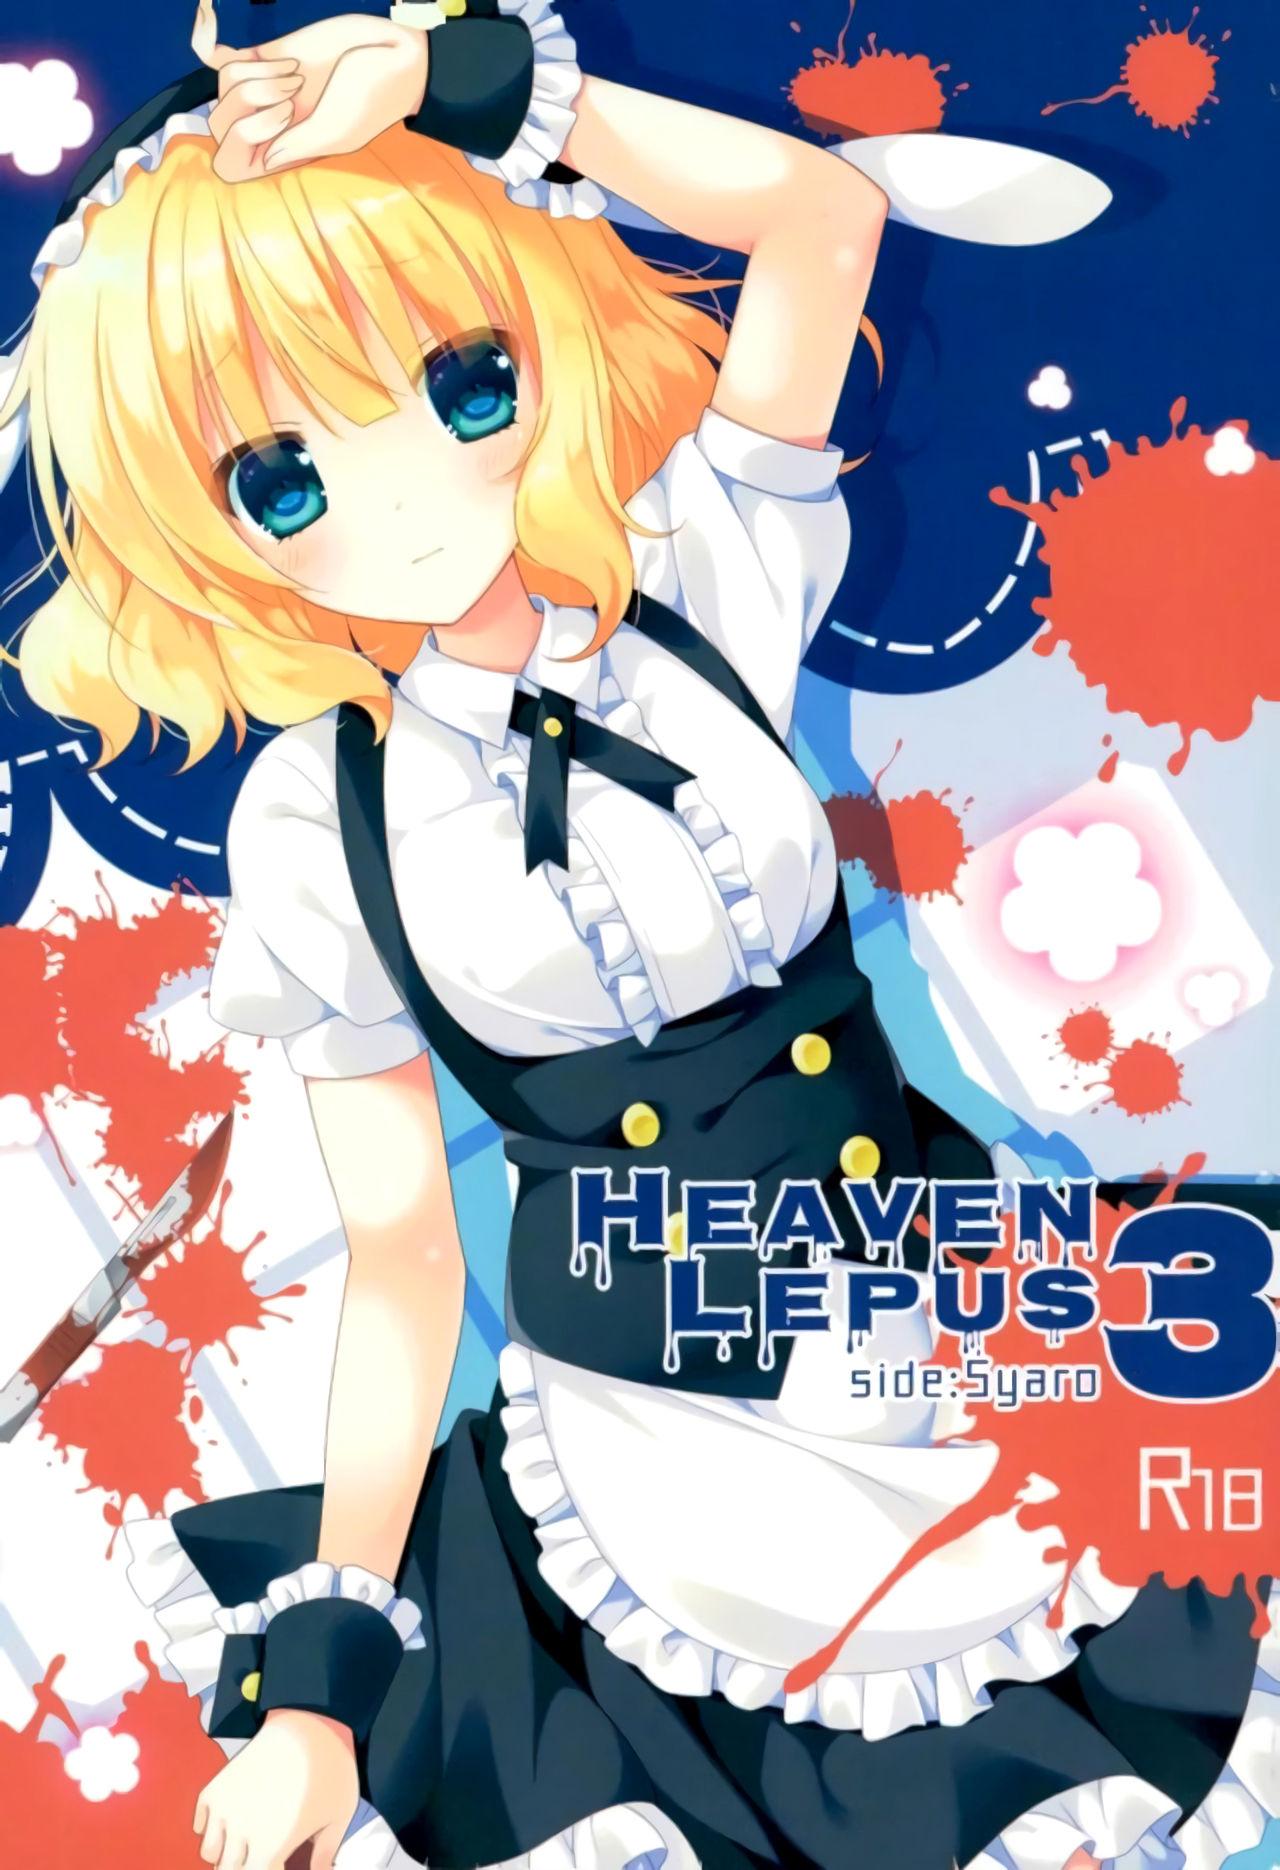 Heaven Lepus3 Side:Syaro 0